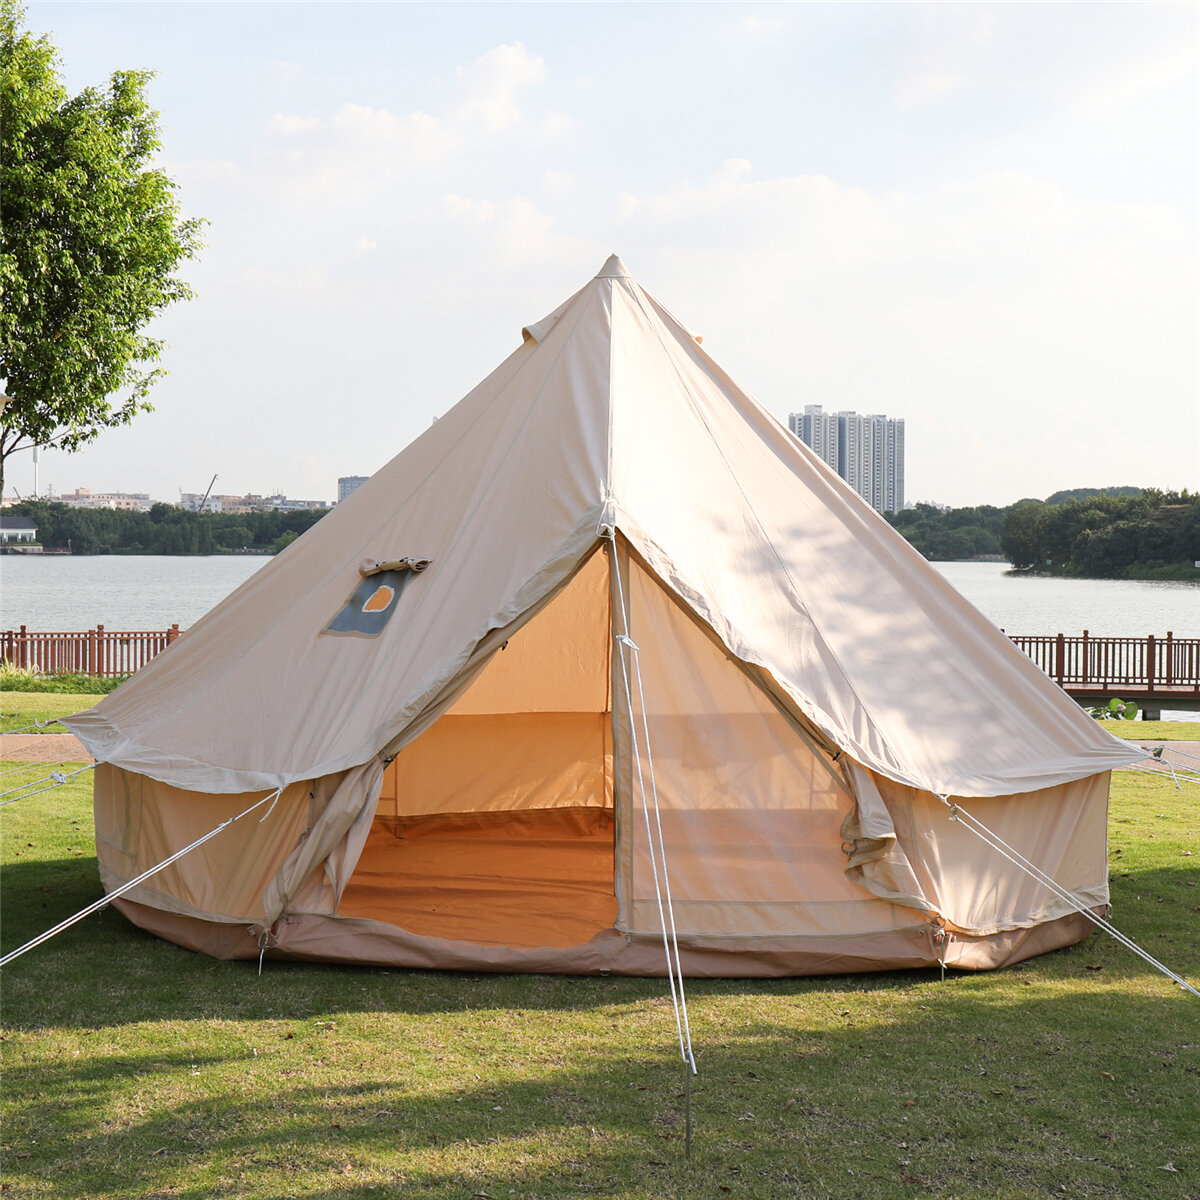 Tente pyramidale en toile de coton tente de Camping en plein air 4 saisons Camping Glamping étanche yourte vivante taille 3m 4m pour tente familiale